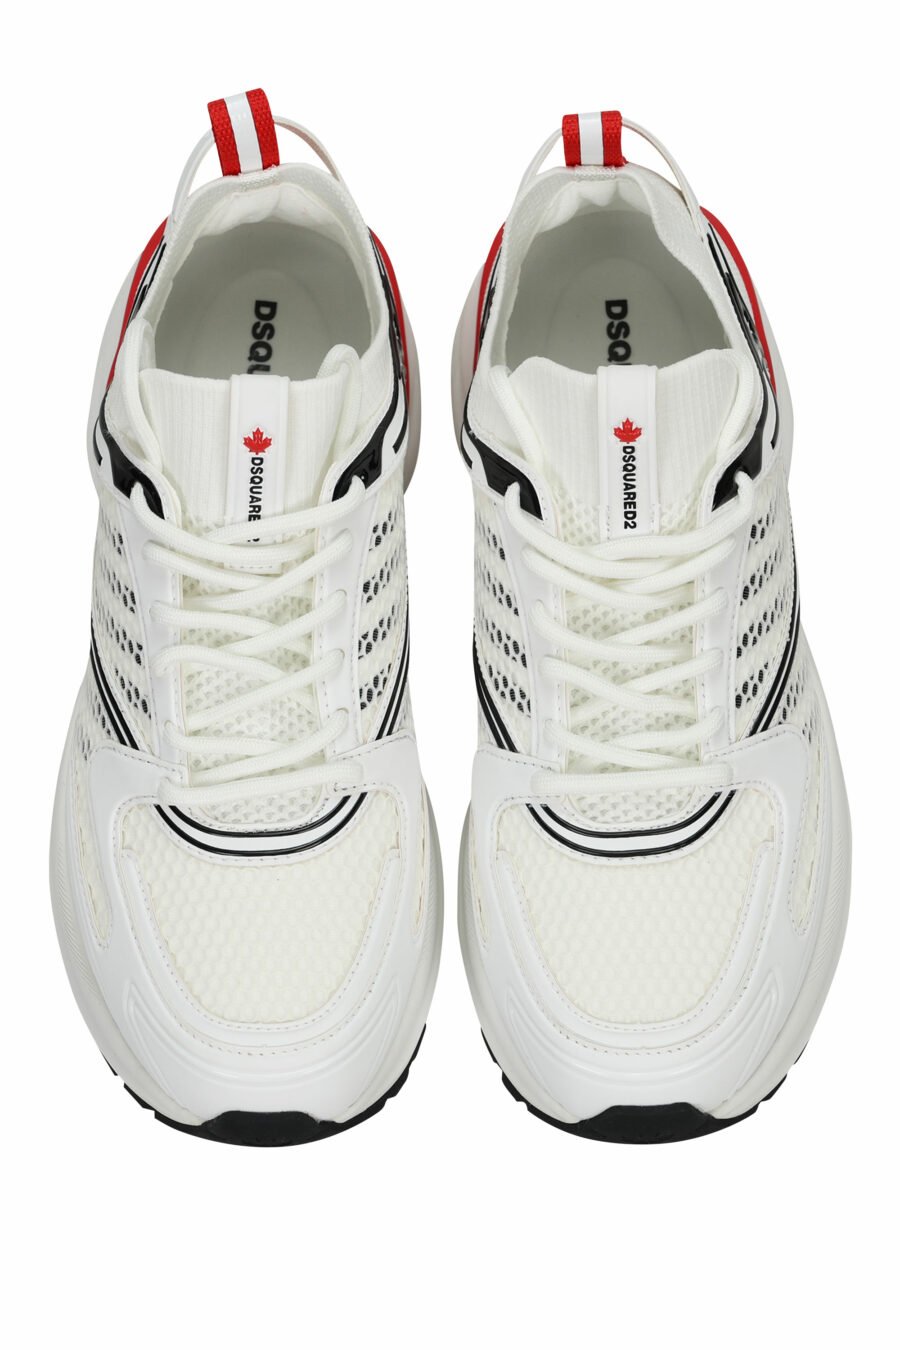 Zapatillas blancas "dash" con rojo - 805777318317 4